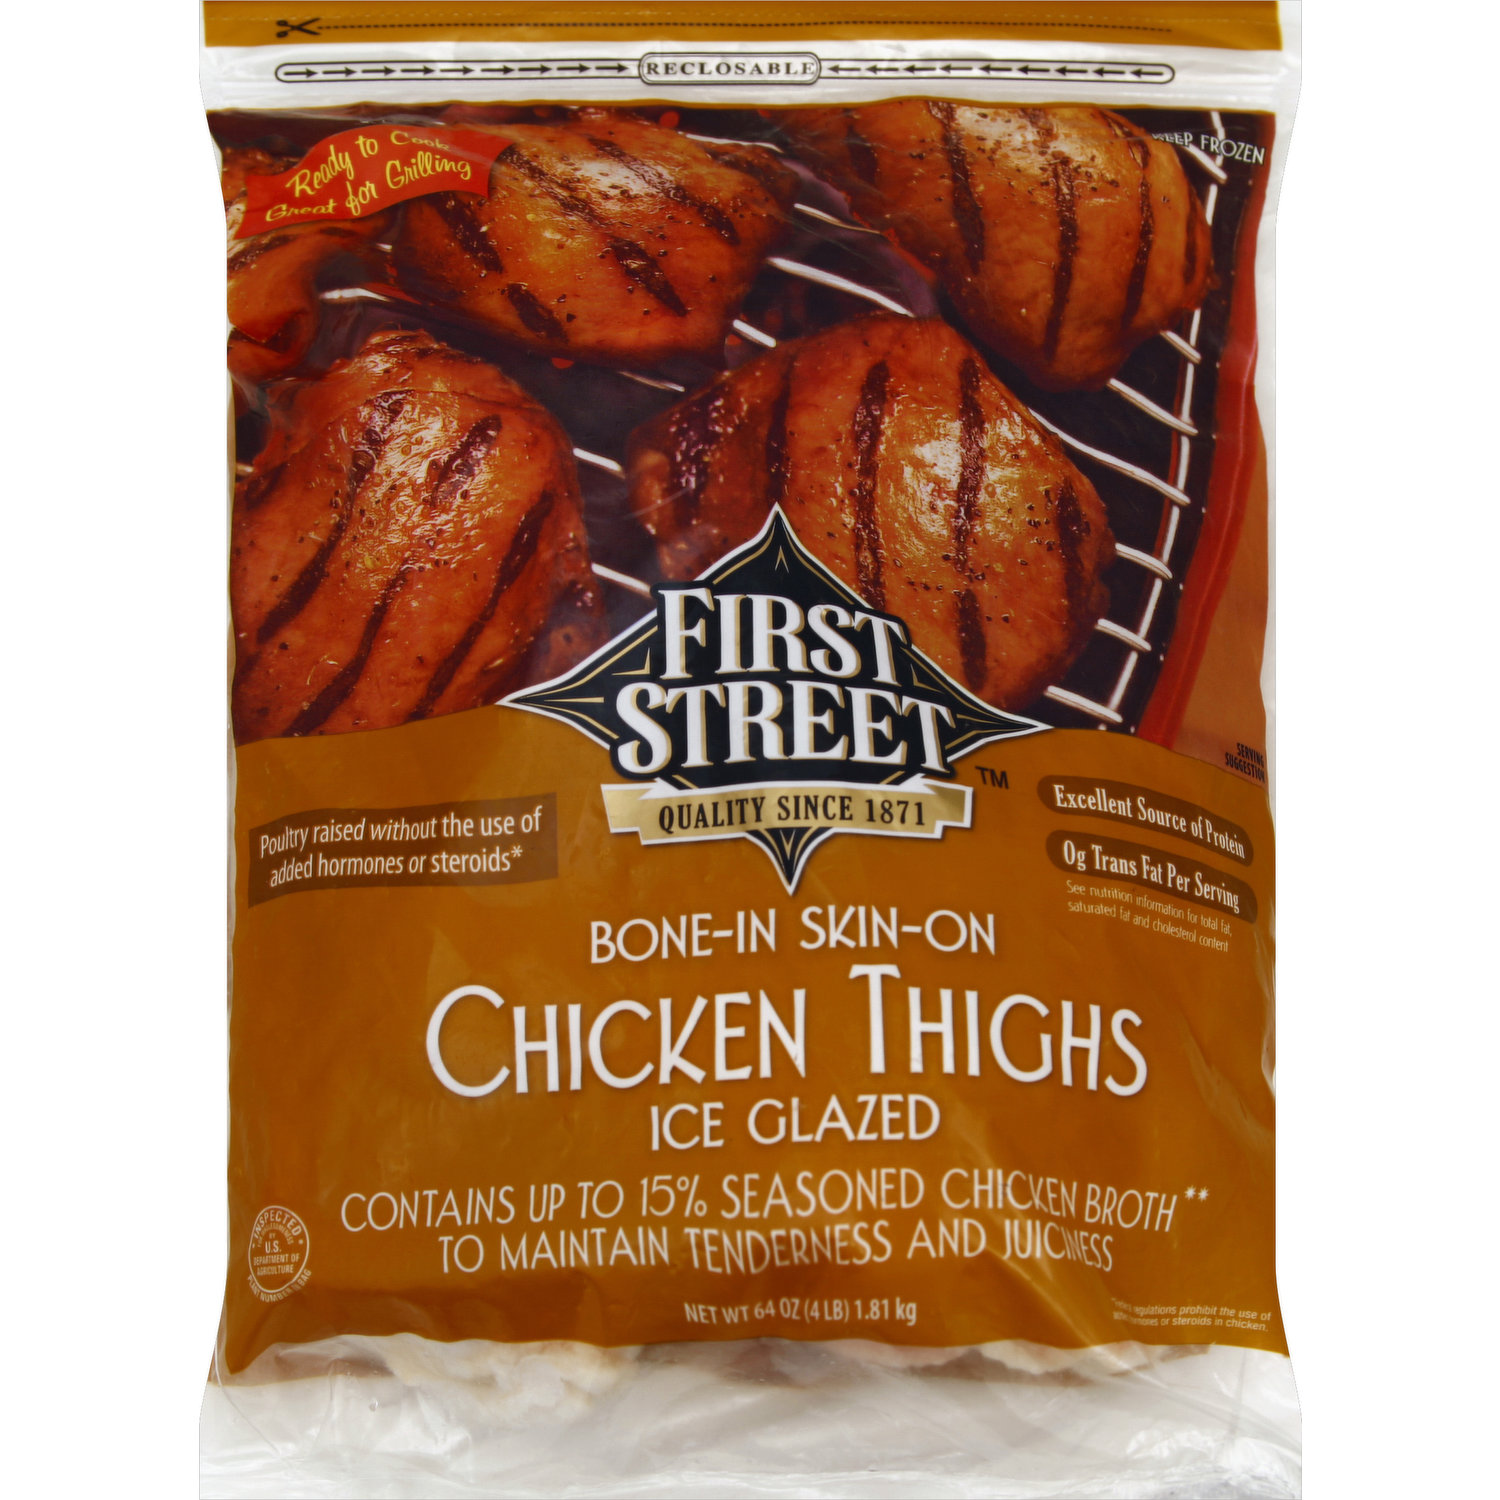 First Street Chicken Thighs, Ice Glazed, Bone-in Skin-on - Smart 